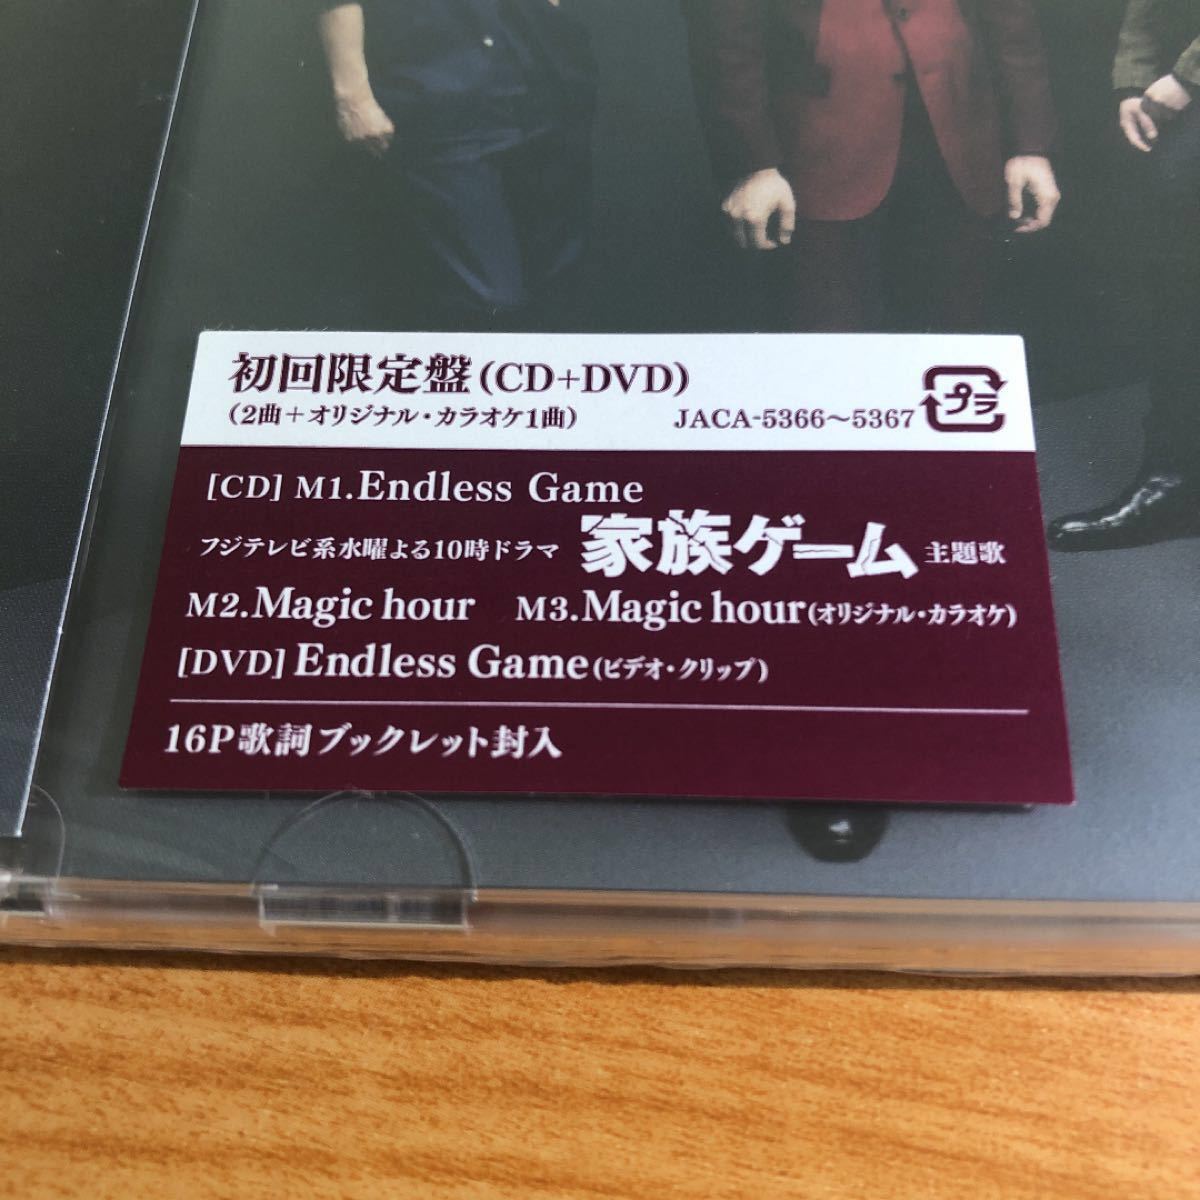 【新品未開封】Endless Game 初回限定盤 CD+DVD/嵐 ARASHI